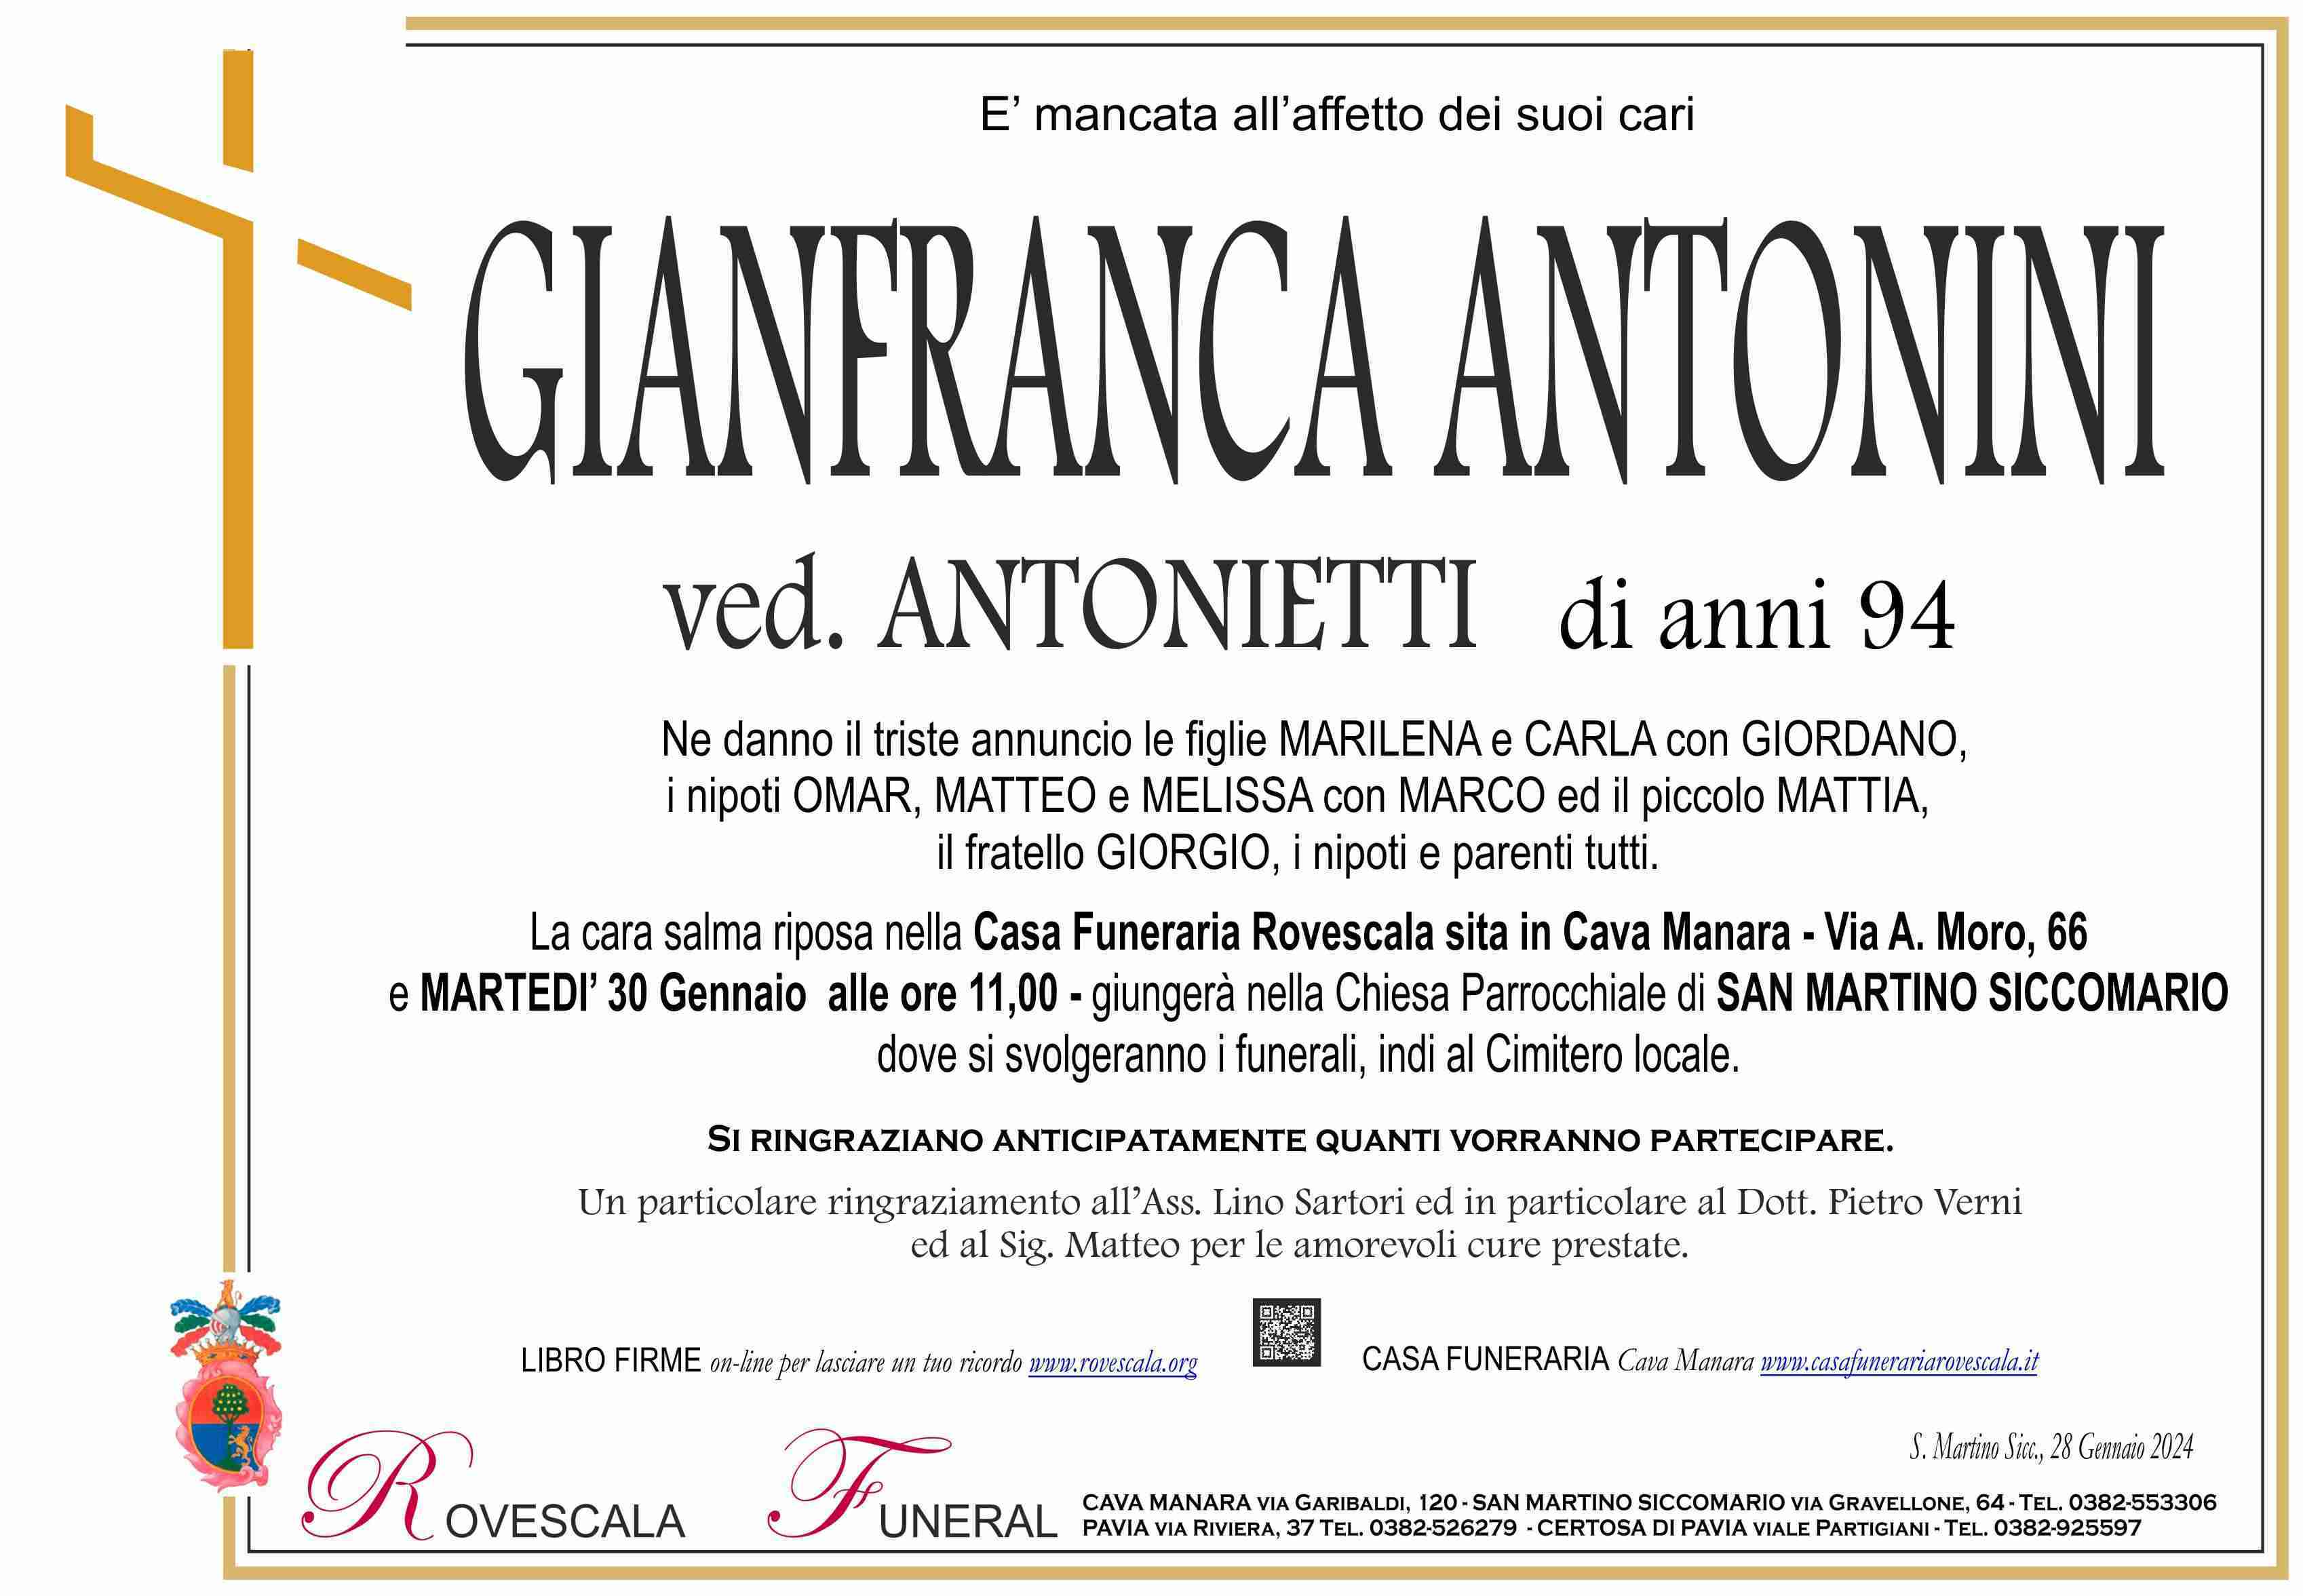 Gianfranca Antonini